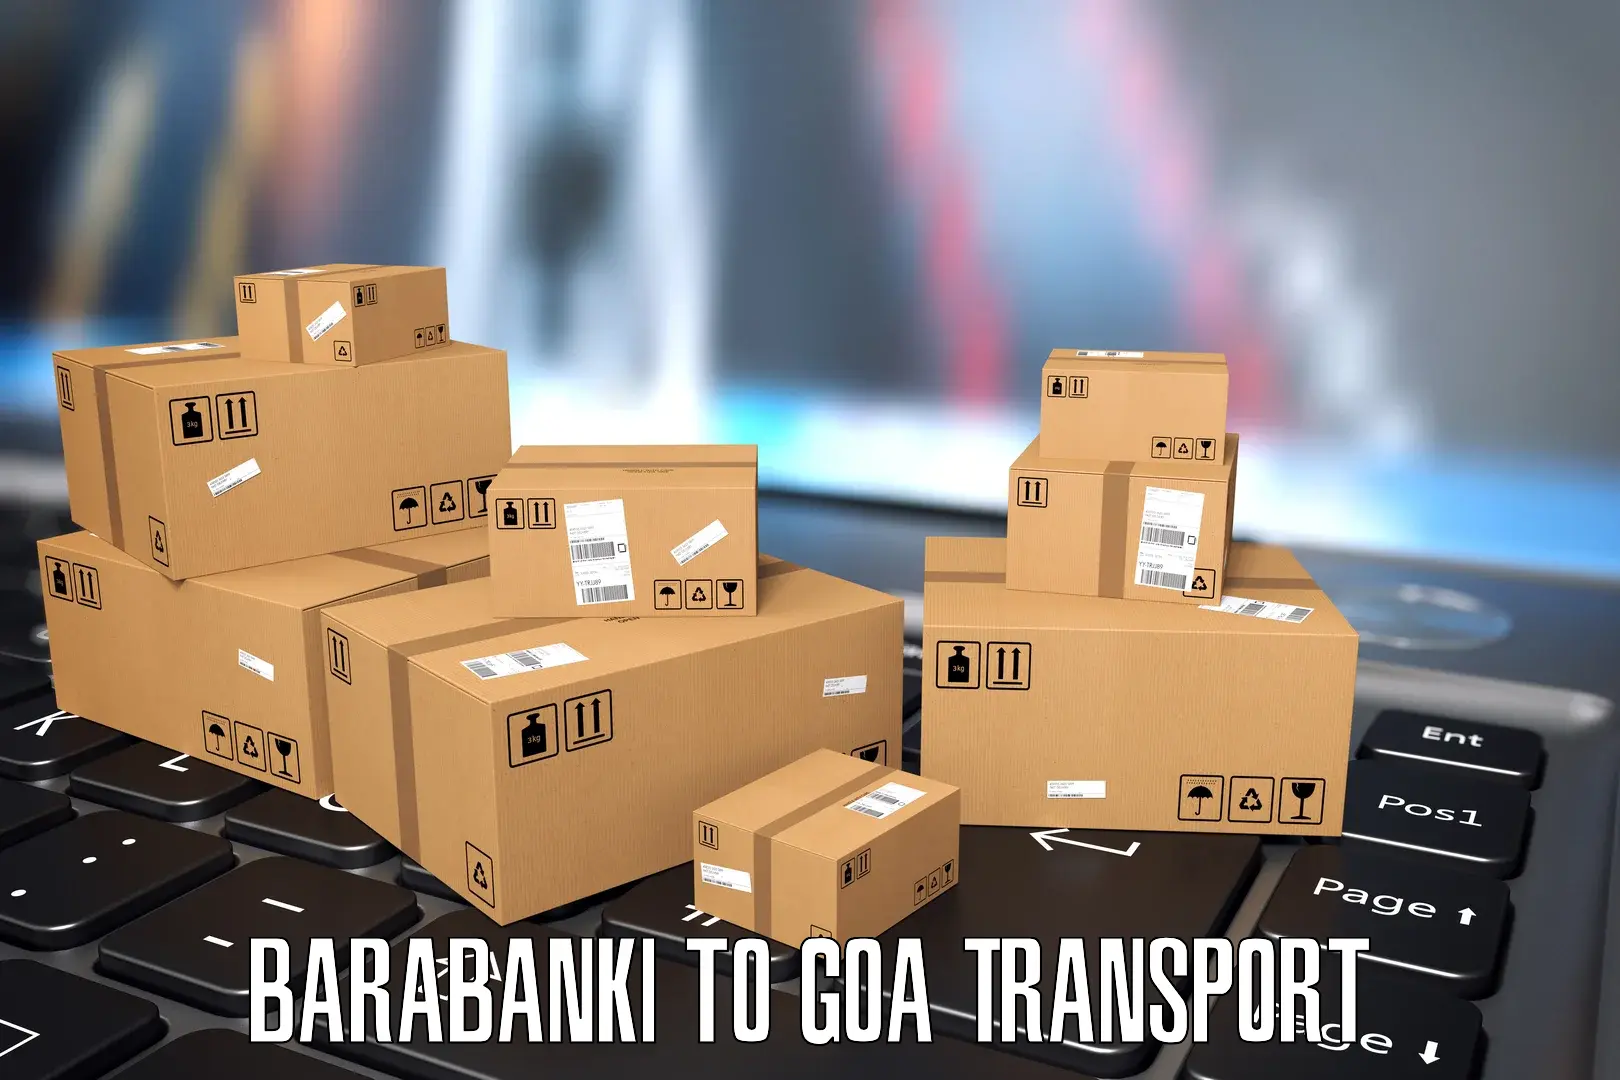 Transport in sharing Barabanki to Bardez